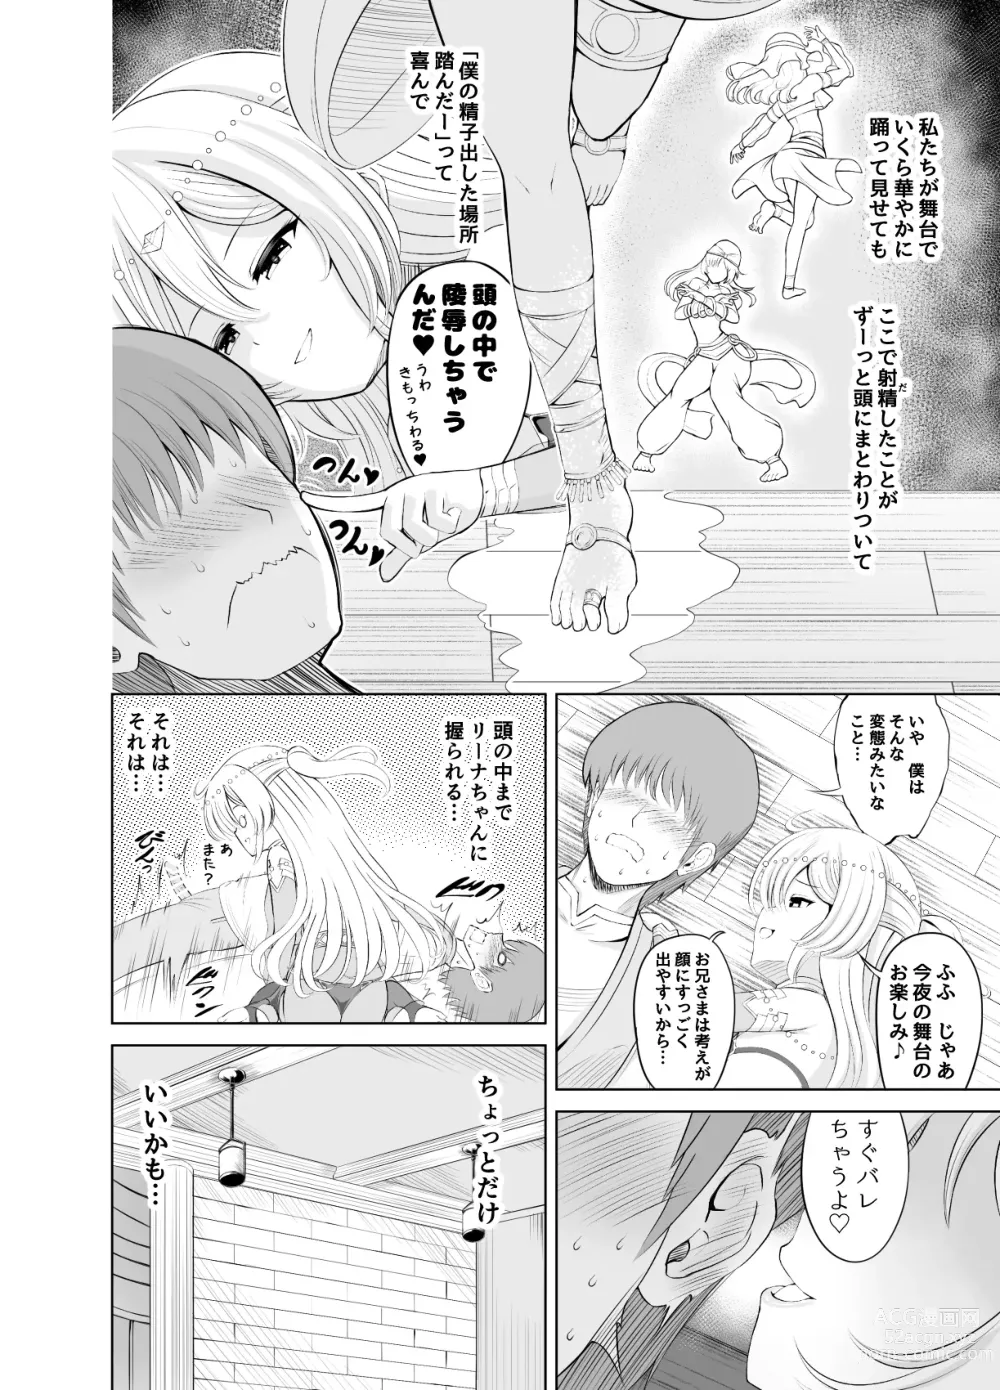 Page 8 of doujinshi Ama Zeme ~Saioshi no Koakuma Imouto-kei Odoriko ni Omocha ni Sareru Hibi no Hitomaku~